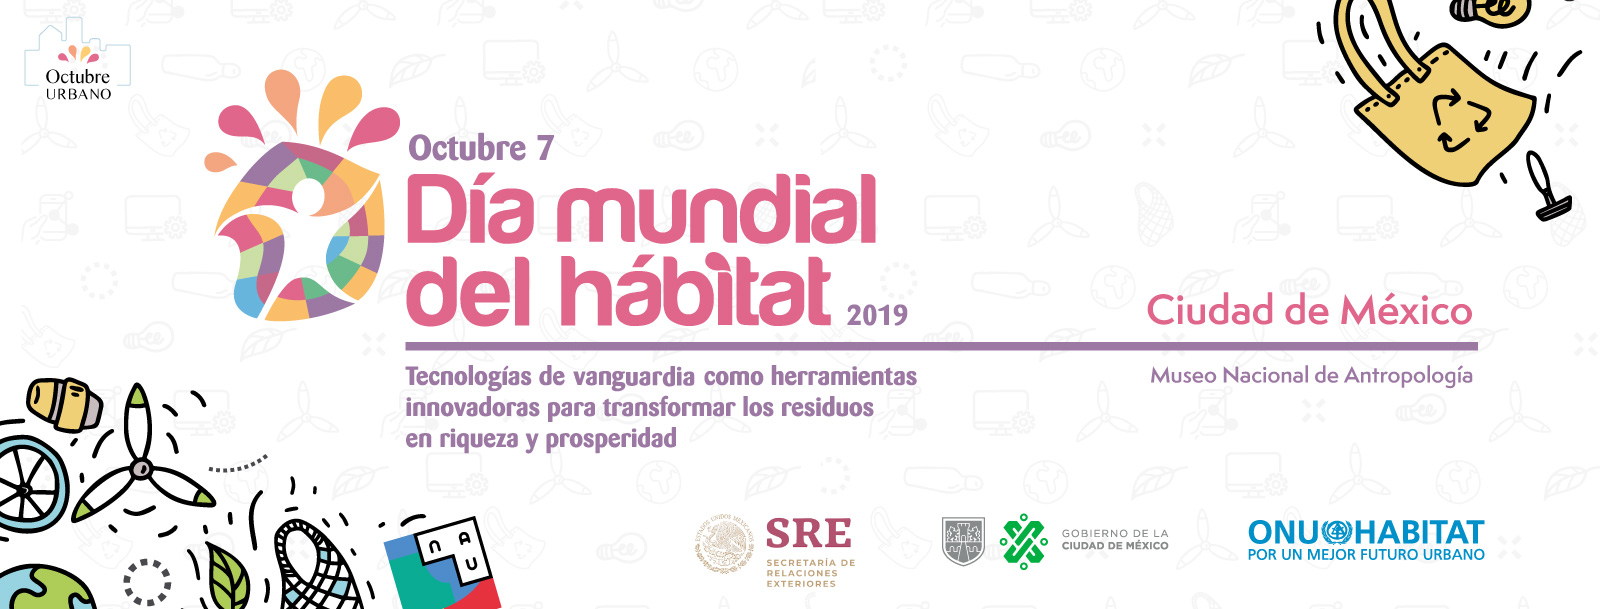 Día Mundial del Hábitat 2019 - Ciudad de México